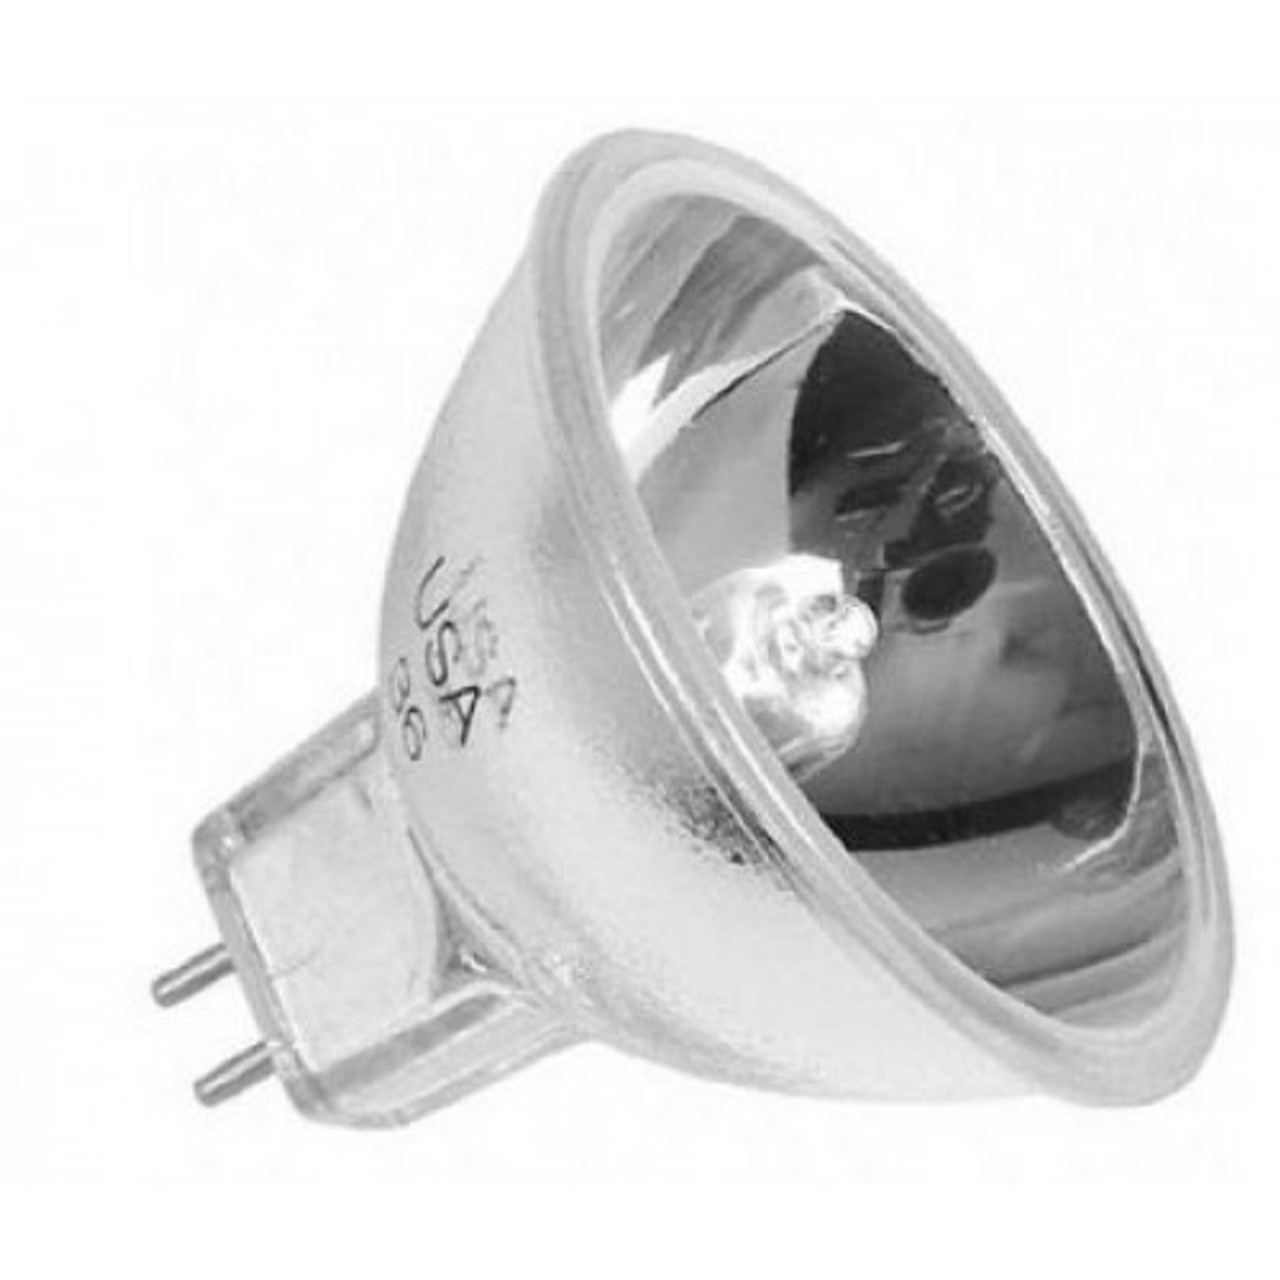 Osram EJA 150 Watt 21 Volt MR16 Halogen Lamp